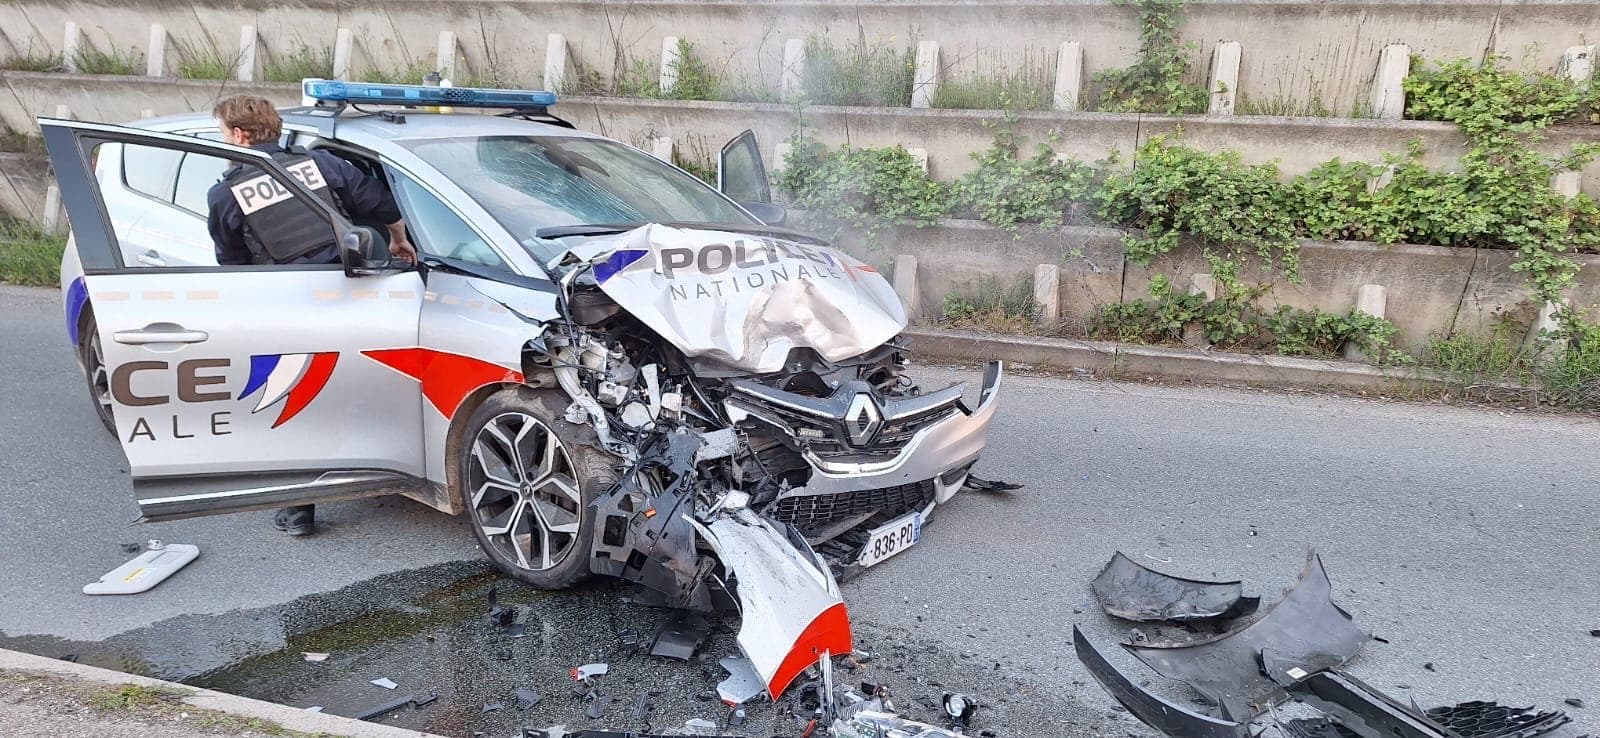 wittenheim: trois policiers blessés dans une collision avec un automobiliste après un refus d'obtempérer